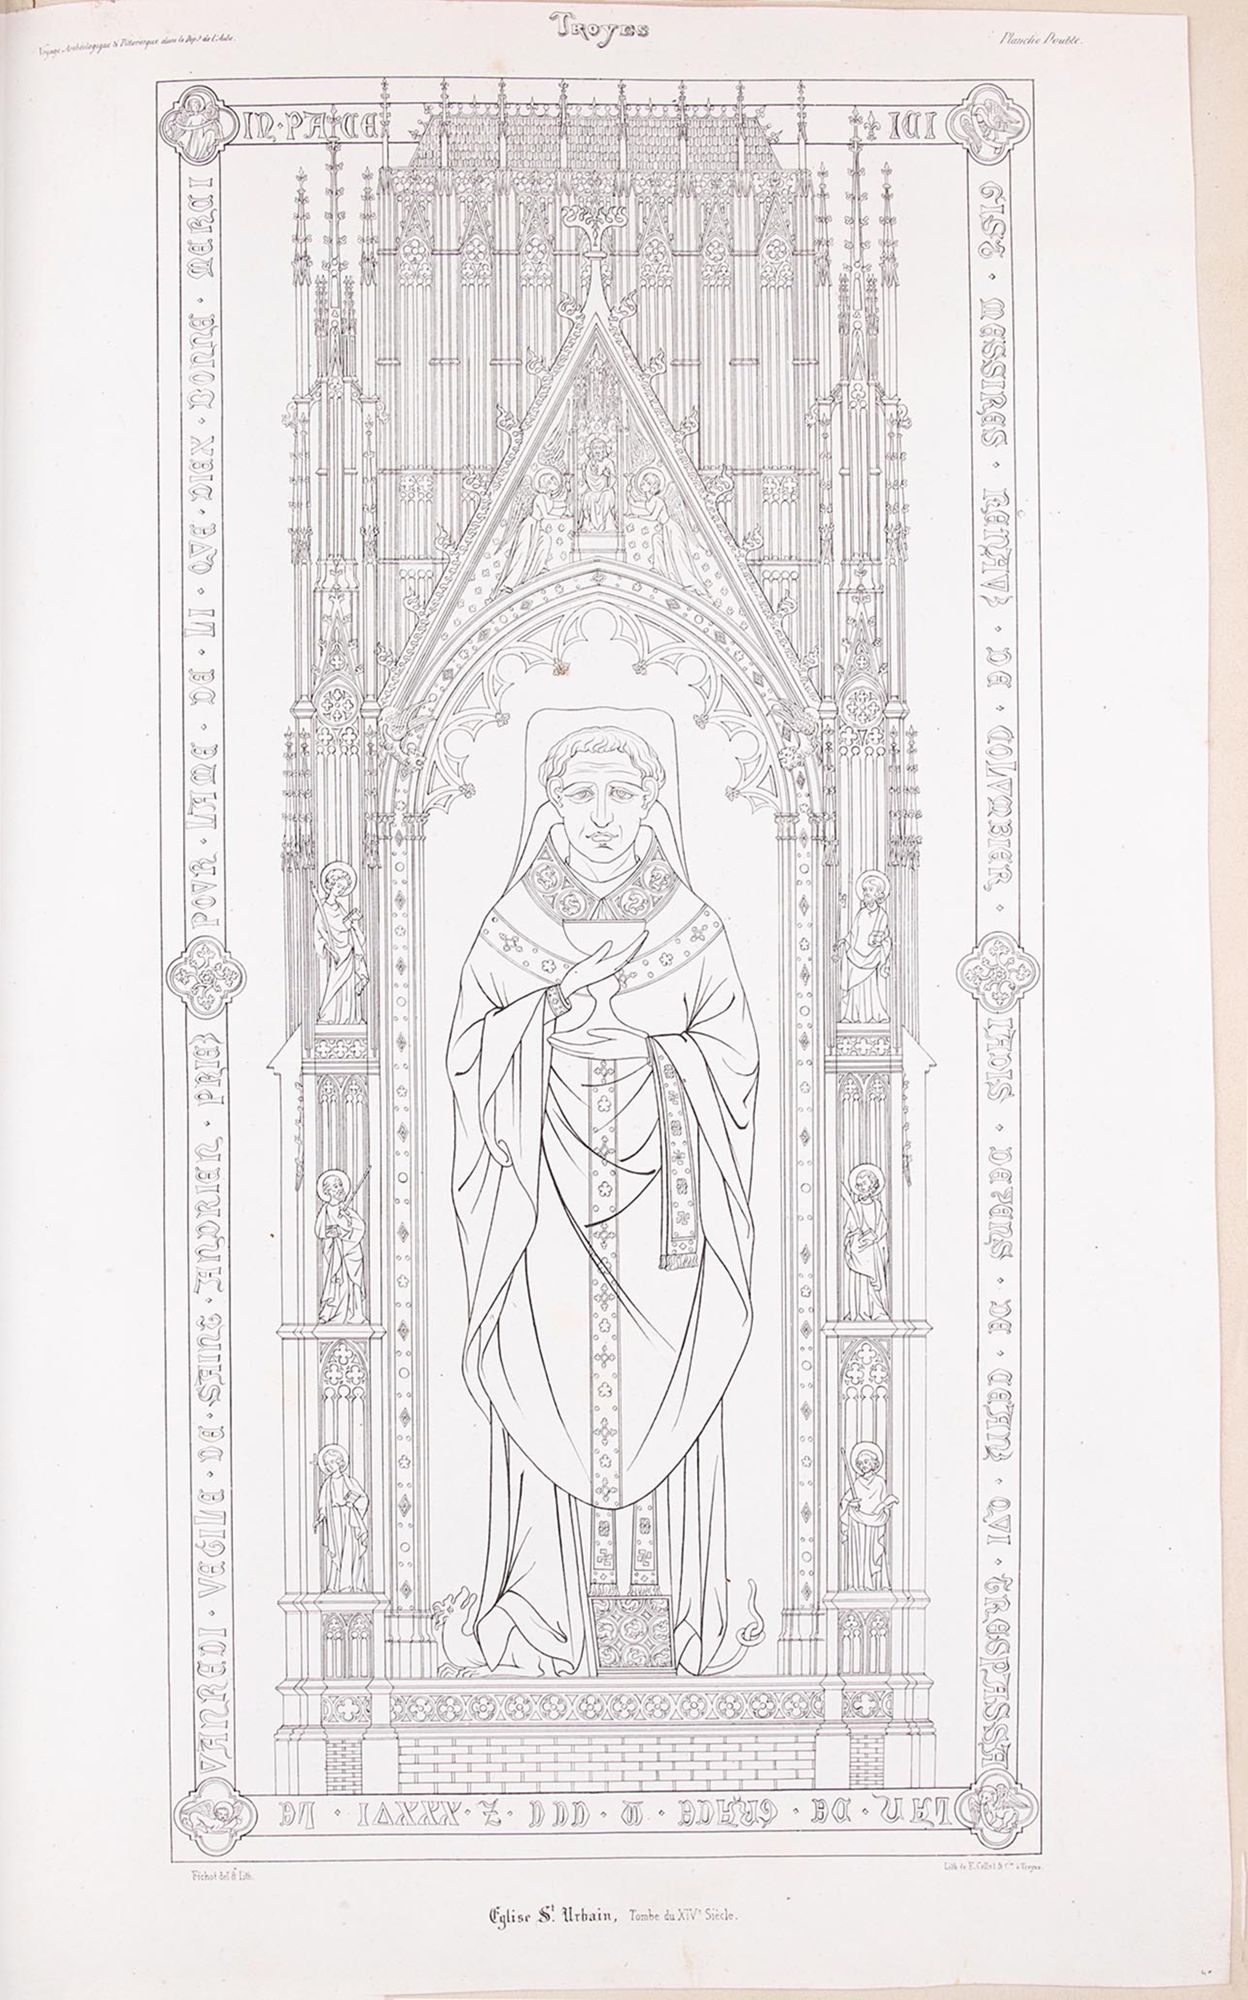 Lithographie. «Eglise Saint-Urbain. Tombe du XIVe siècle », extrait du Voyage Archéologique et Pittoresque dans le Département de l'Aube et dans l'Ancien Diocèse de Troyes, Troyes, 1837.